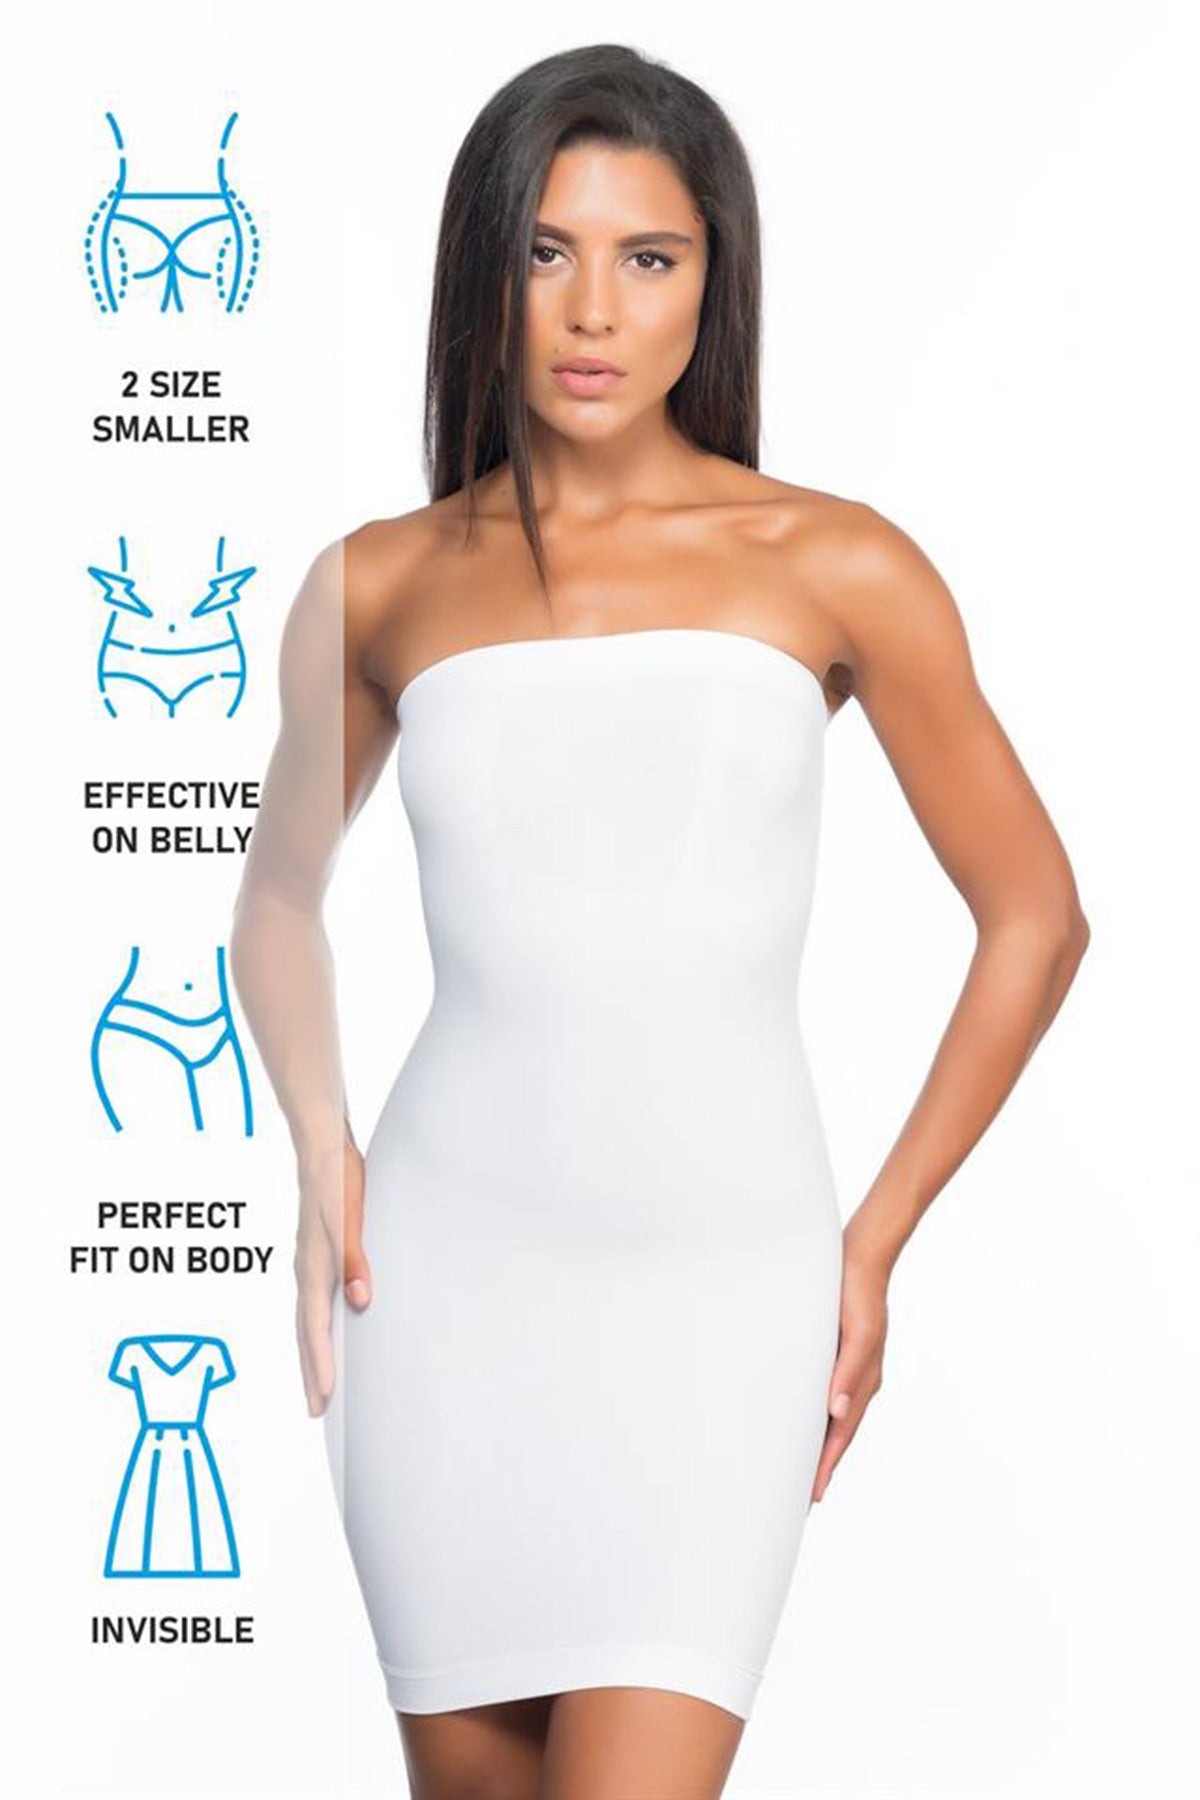 Seamless Straples Postpartum Corset Dress White - 5065